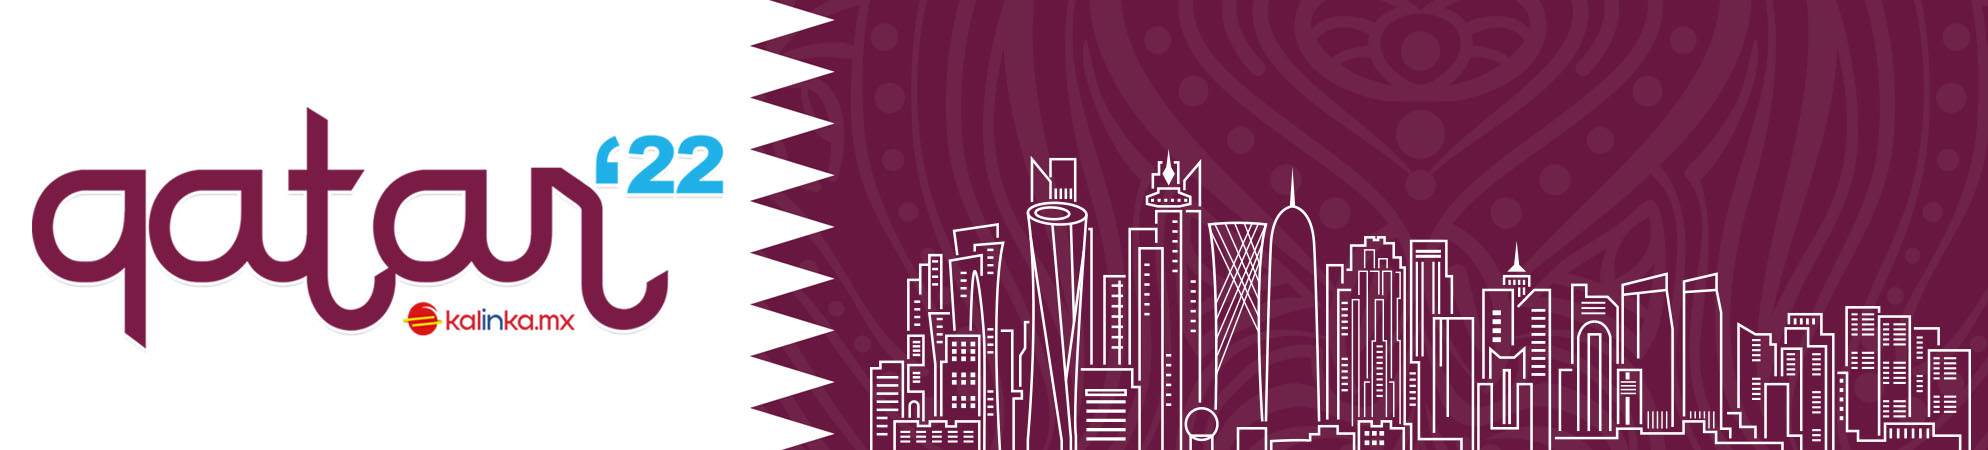 Paquetes Mundial Qatar 2022 -  mundomex qatar 2022 